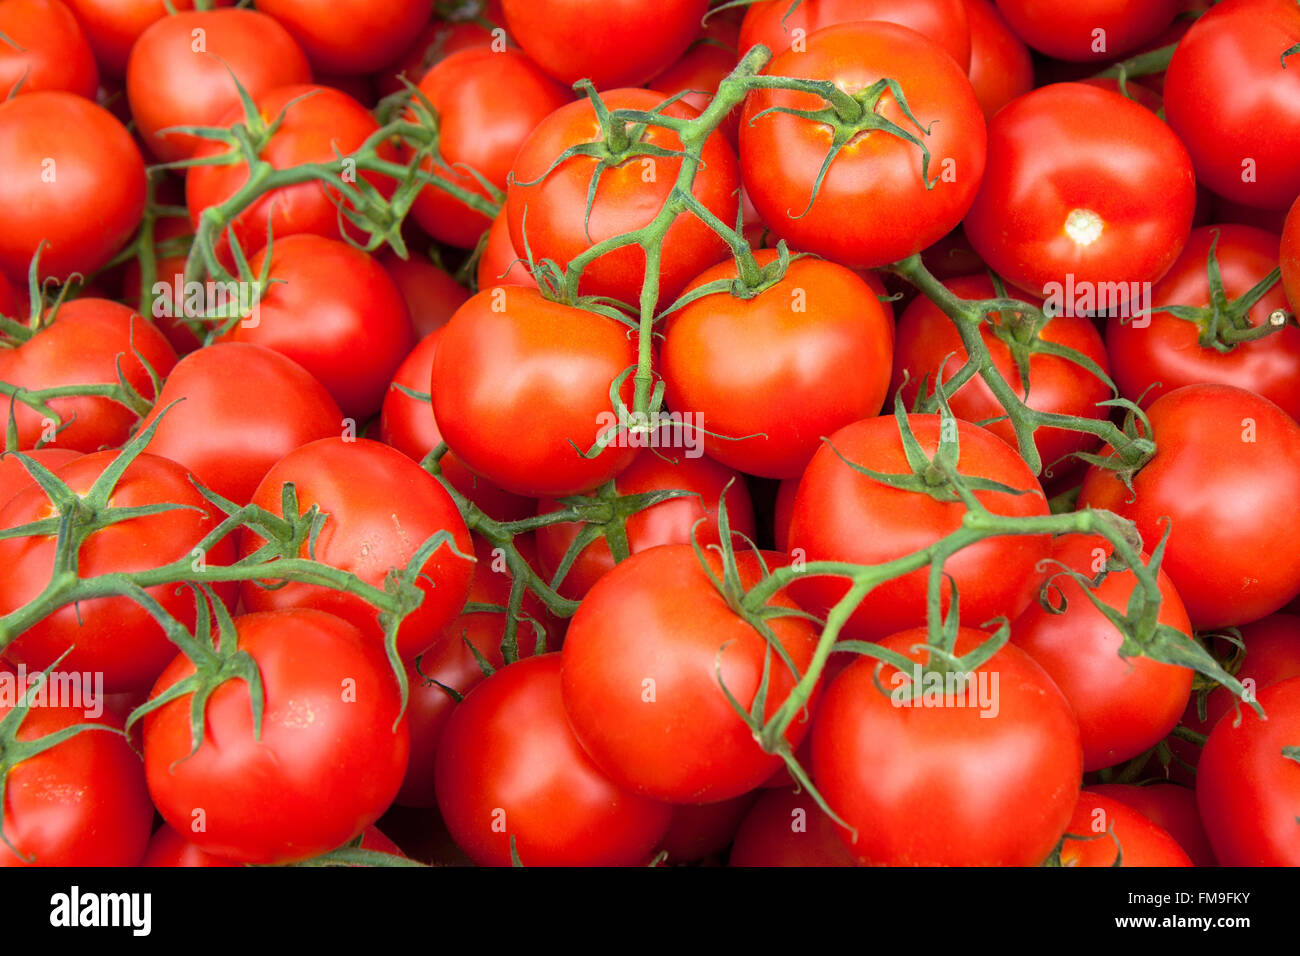 Nahaufnahme Bild von einem Haufen von rot, Reben gereifte Tomaten vom Markt des Landwirts. Rot, Runde, Tomaten sind die grünen Reben befestigt. Stockfoto